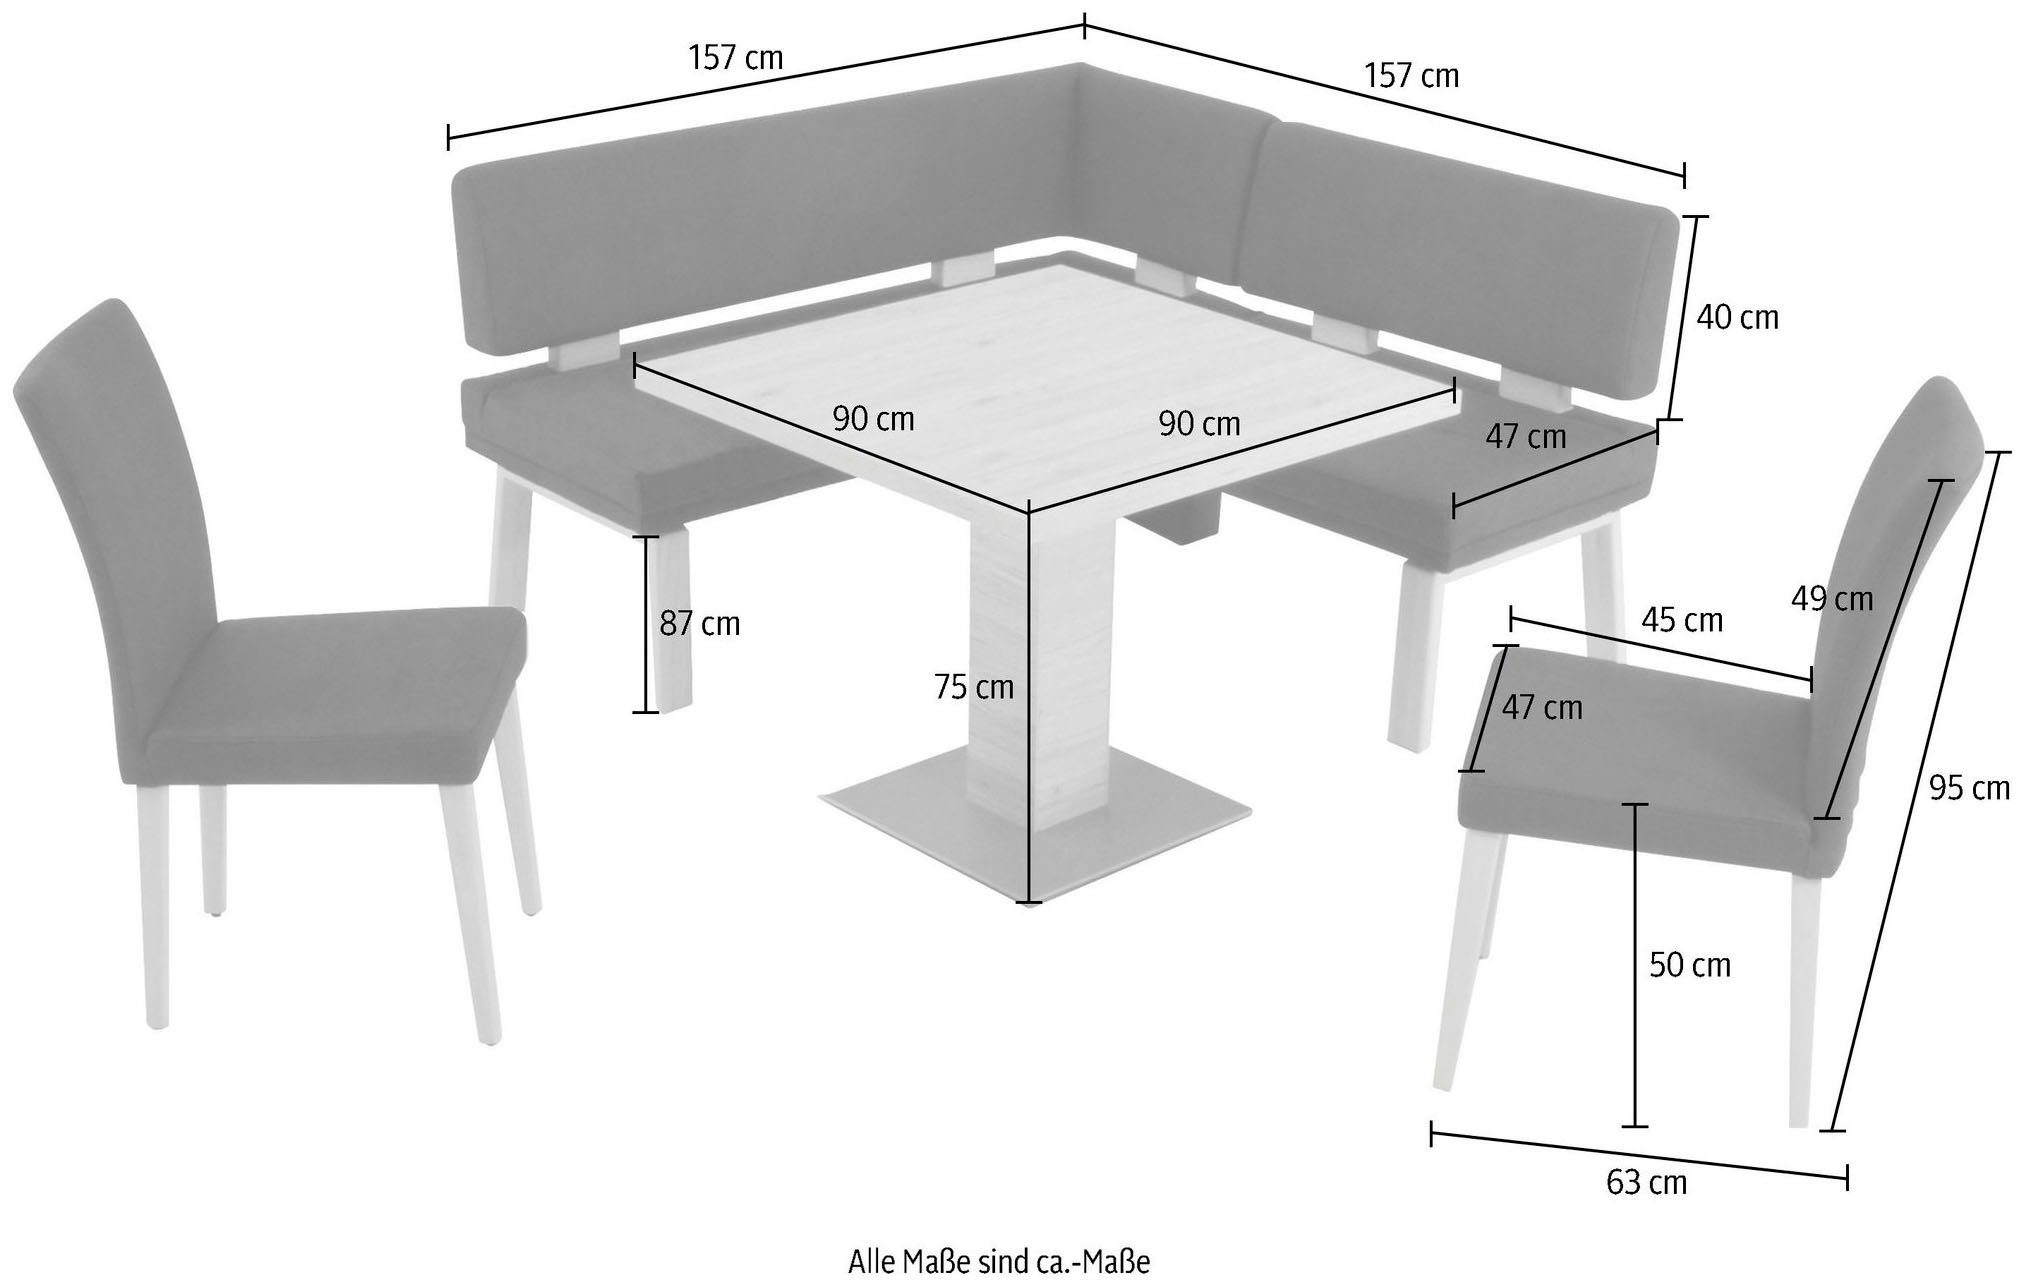 I, 90x90cm, 157cm, Eiche gleichschenklig Wohnen Eckbankgruppe Tisch K+W und zwei darkbrown Santos 4-Fußholzstühle & Komfort